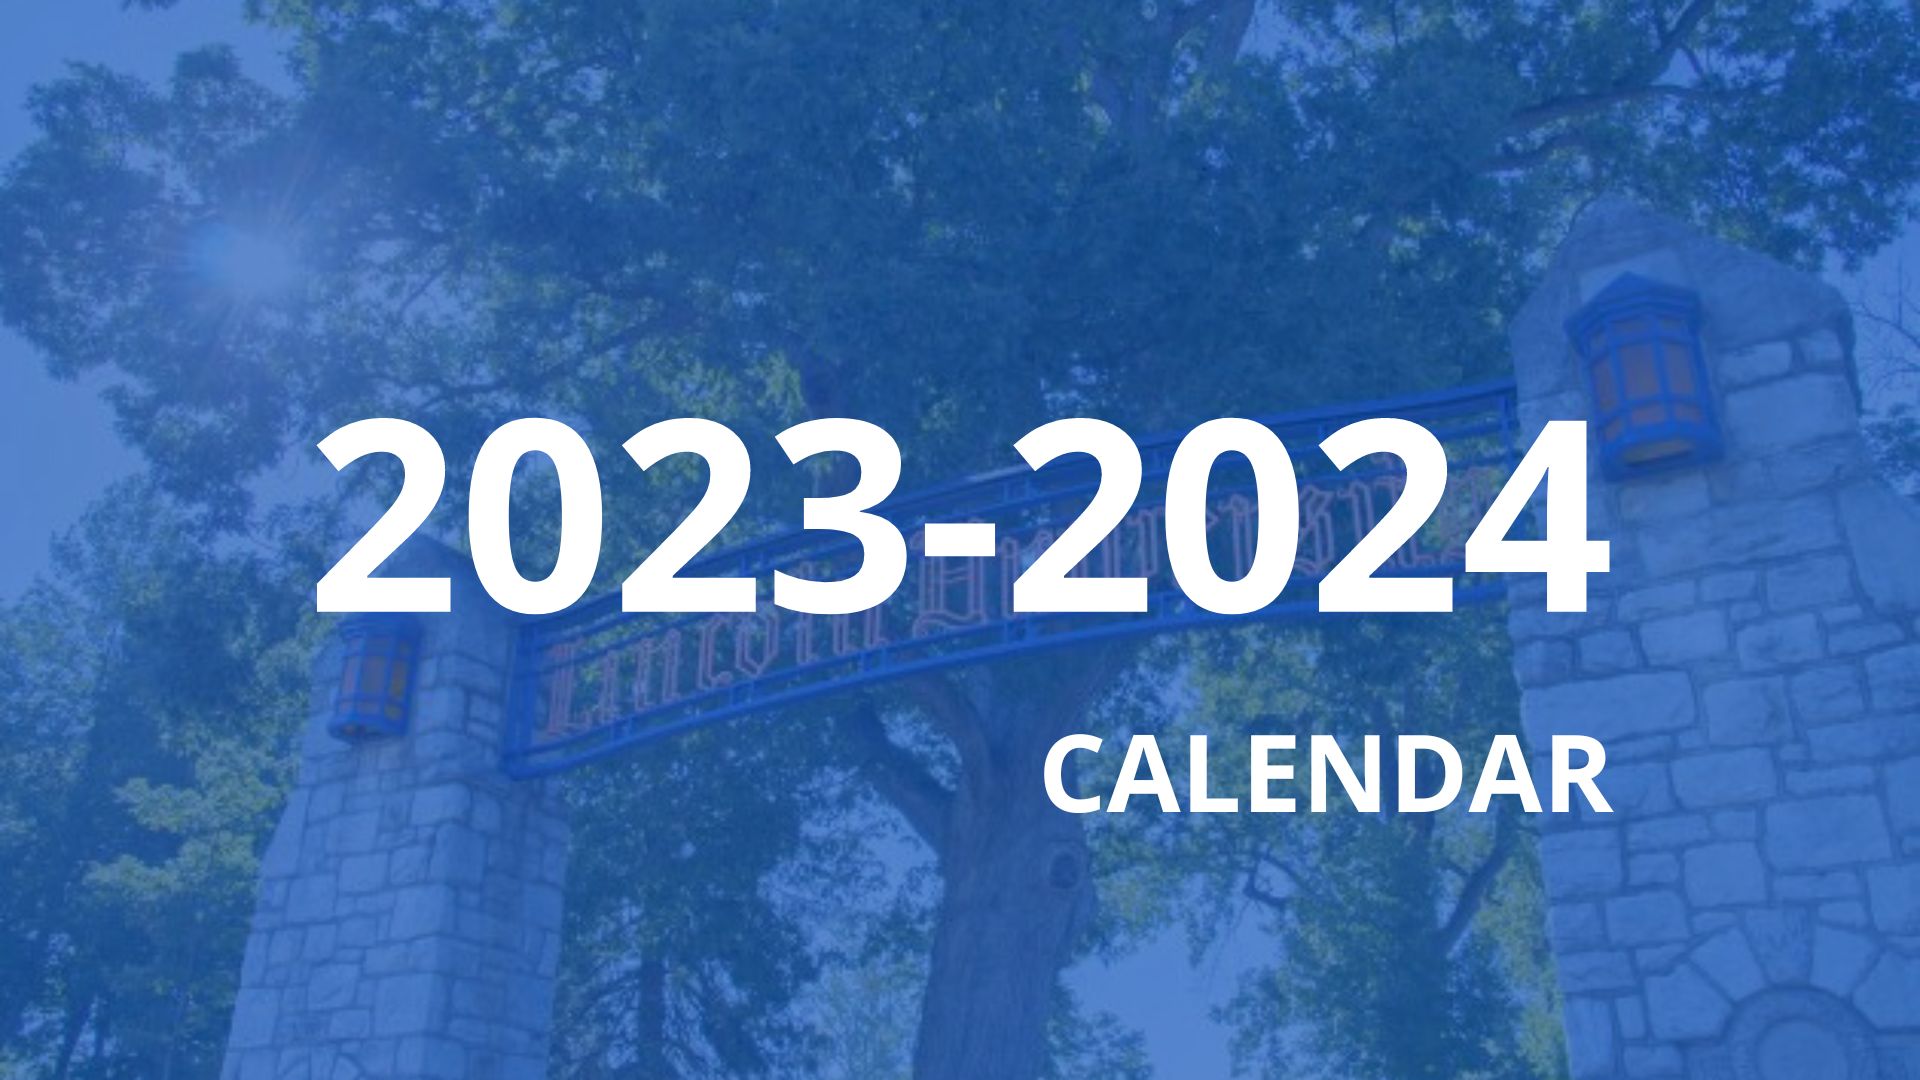 2023-2024-CALENDAR-1.jpg